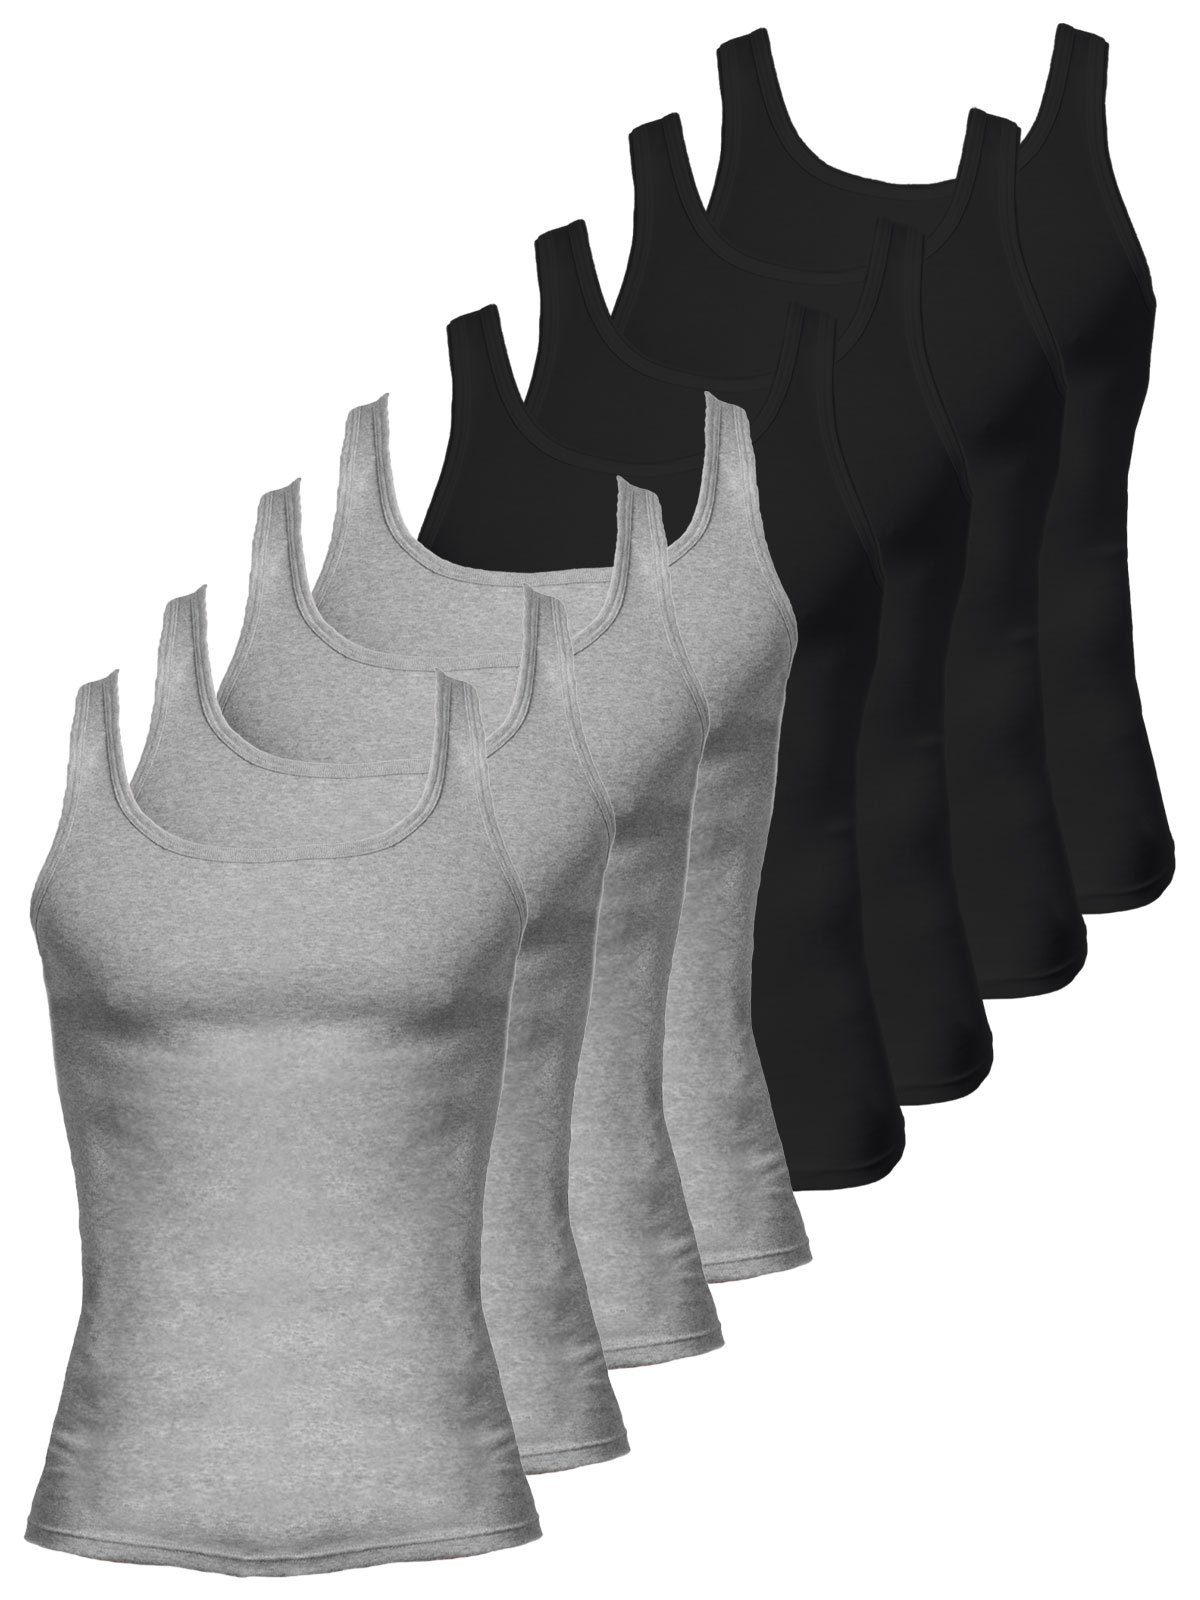 KUMPF Achselhemd 8er Sparpack Herren Unterhemd Bio Cotton (Spar-Set, 8-St) - schwarz steingrau-melange | Ärmellose Unterhemden